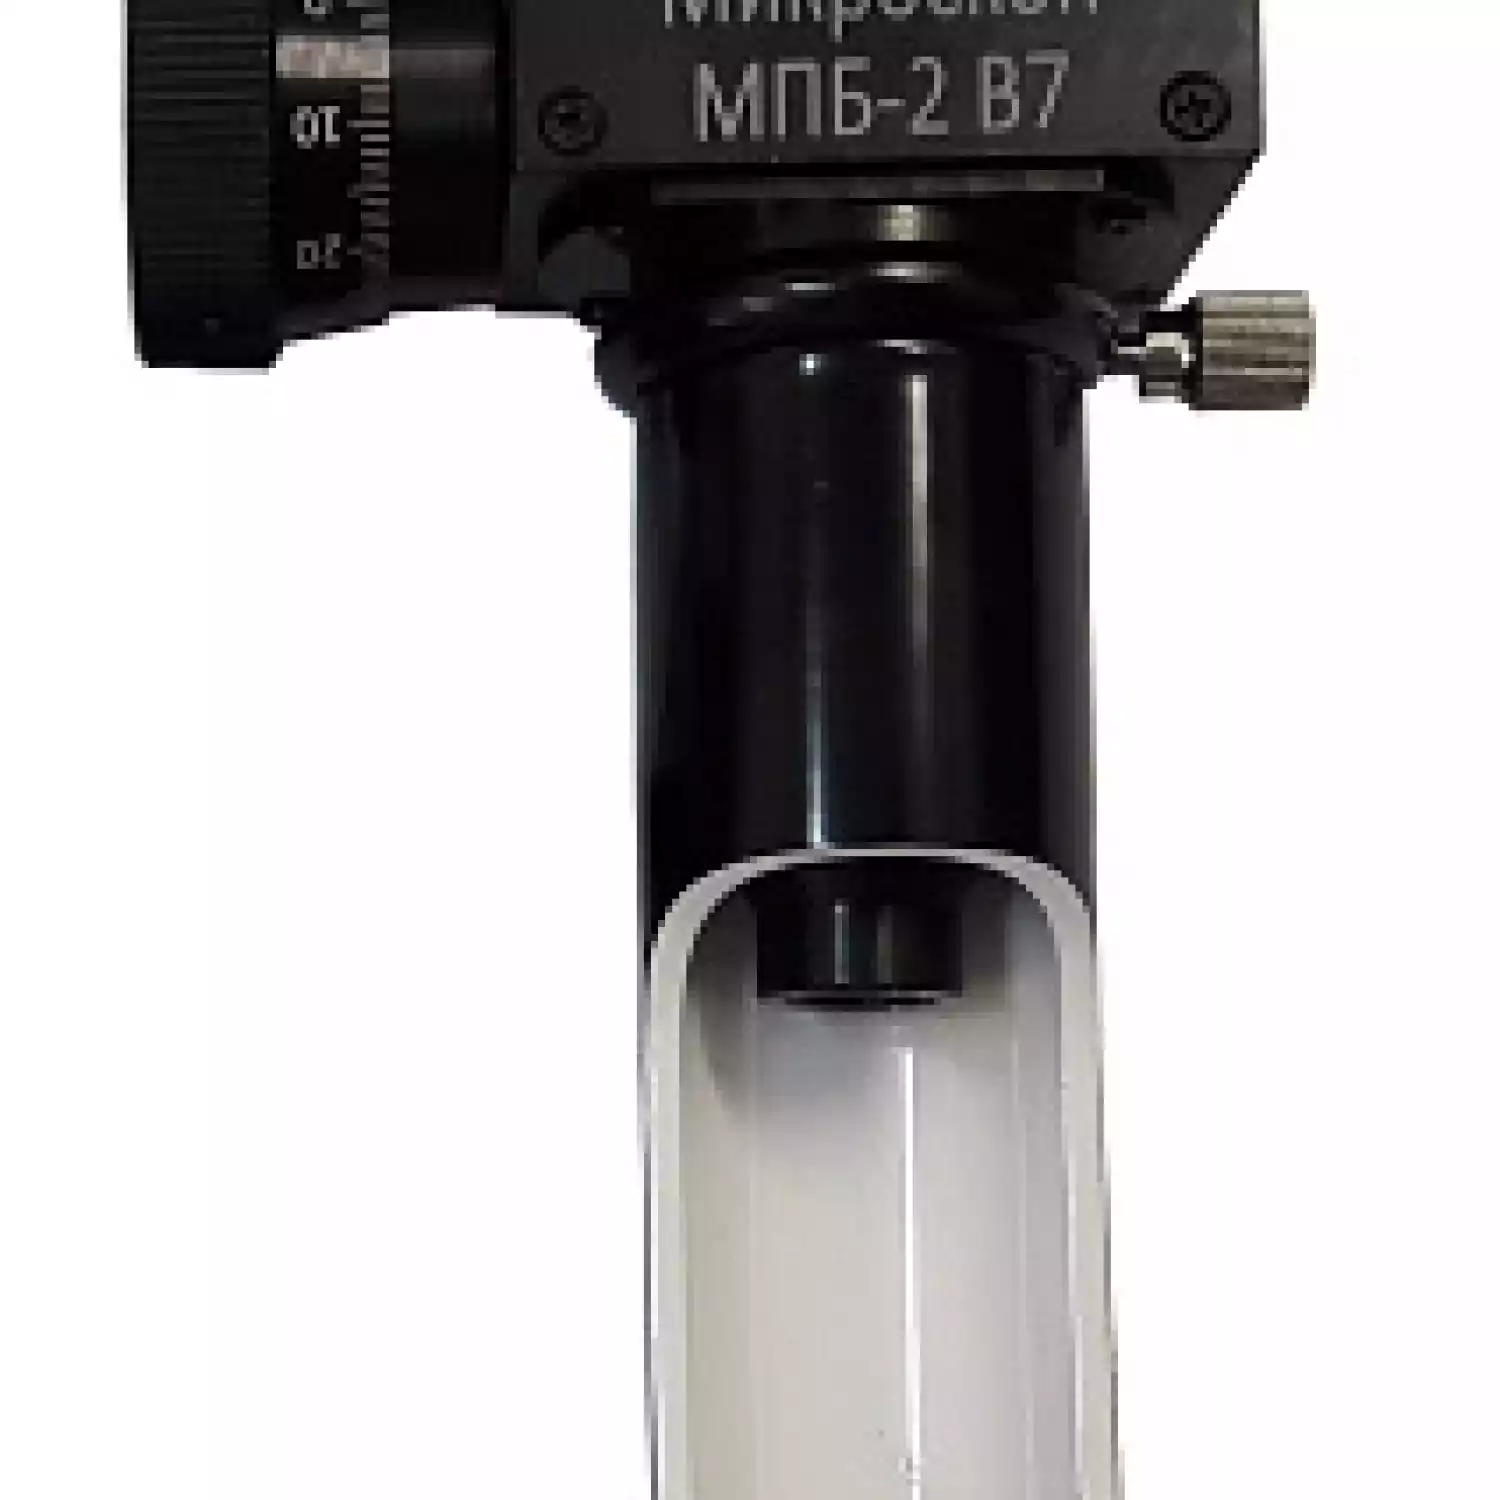 МПБ-3 В7 микроскоп отсчётный Бринелль - 1